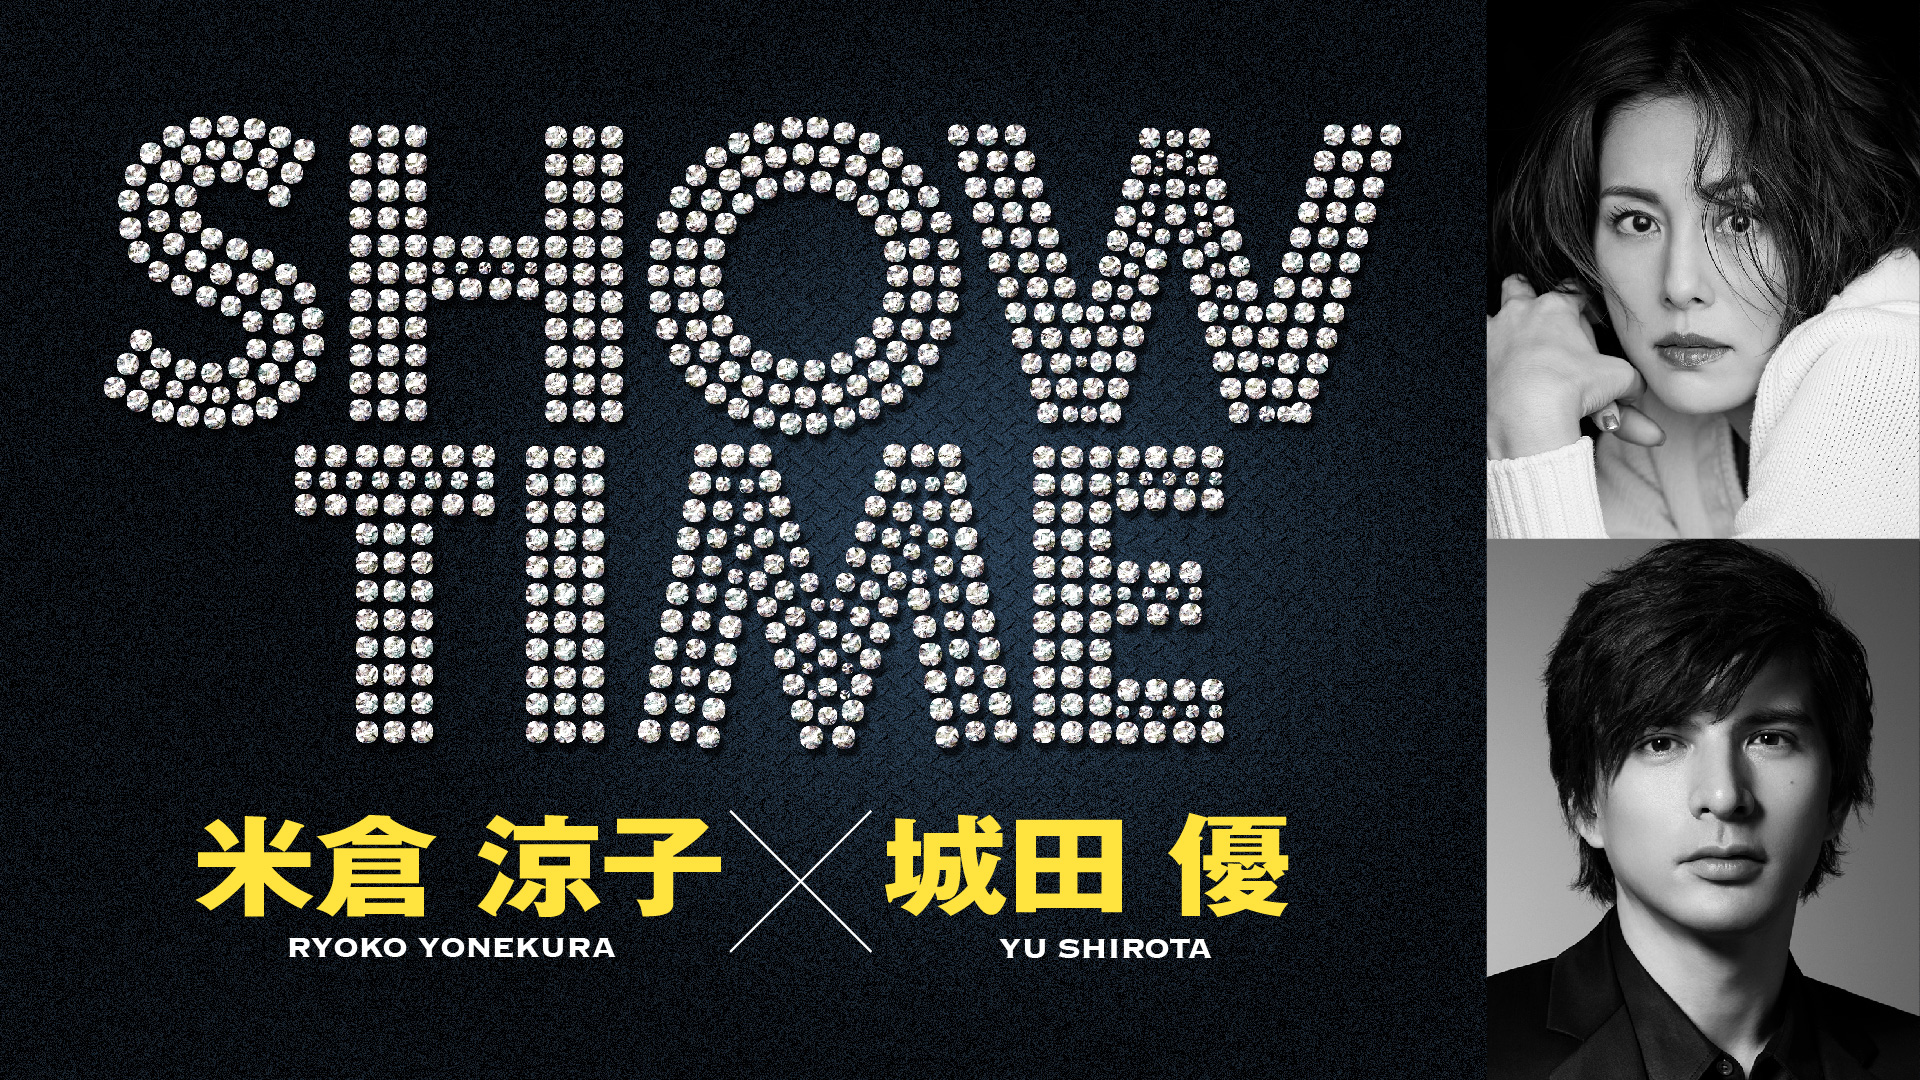 追加公演決定 米倉涼子と城田優 舞台初共演 共同プロデュースで贈るエンターテインメントショー Showtime 株式会社キョードーメディアスのプレスリリース